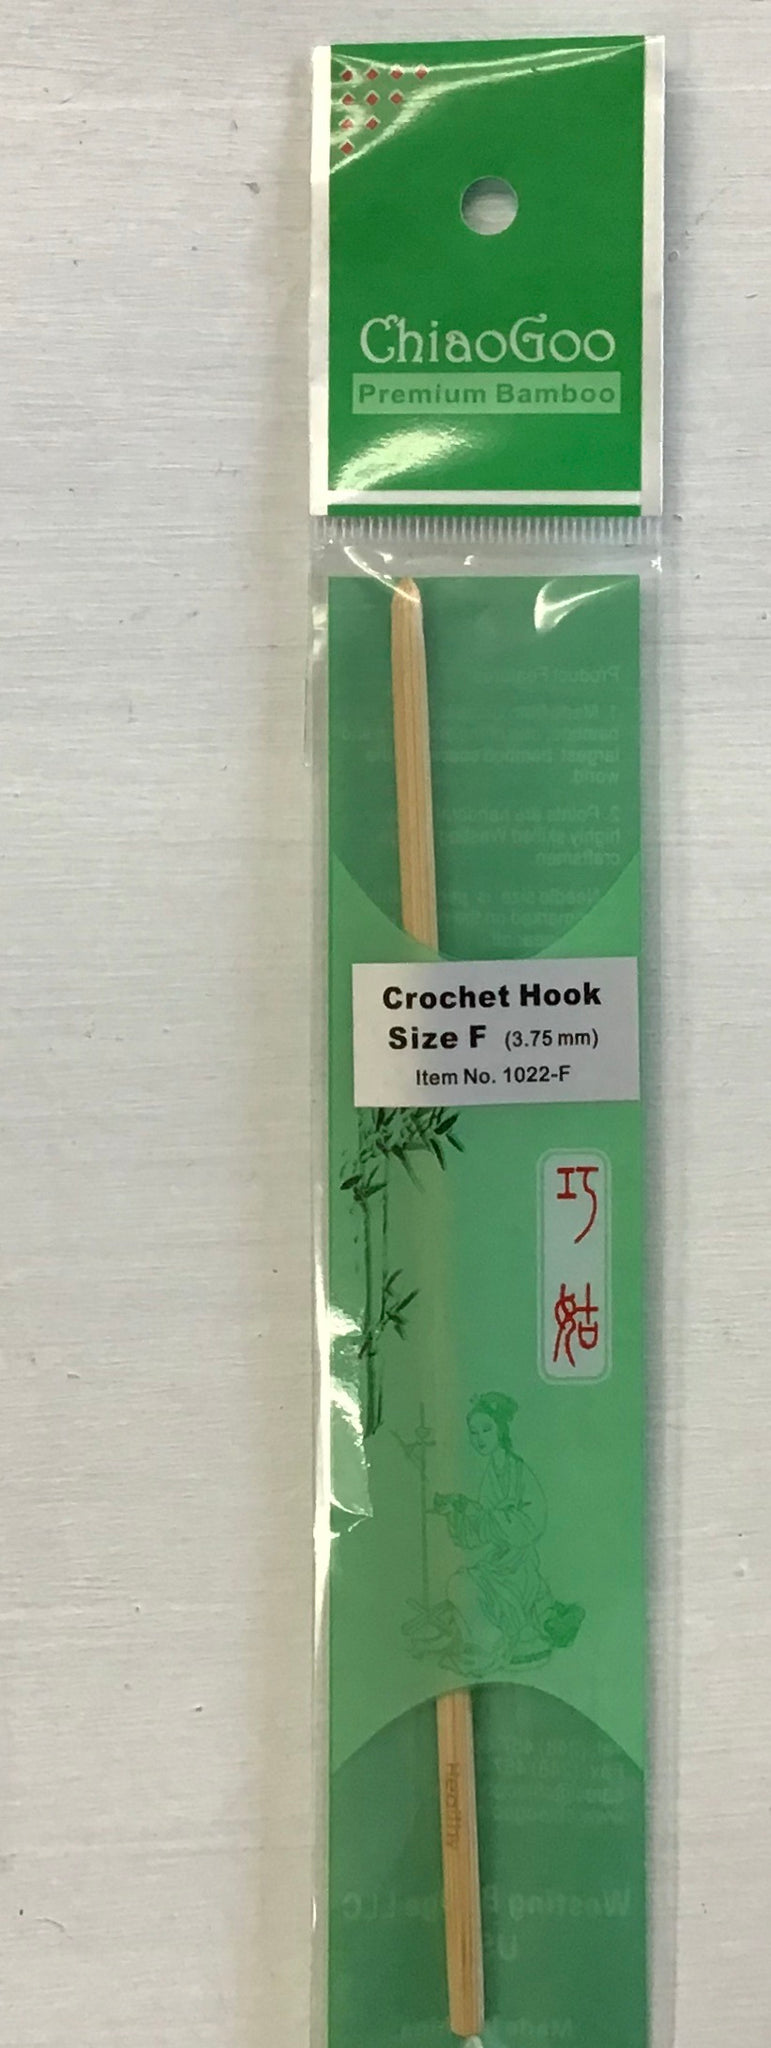 ChiaoGoo 11.5mm Crochet Hook